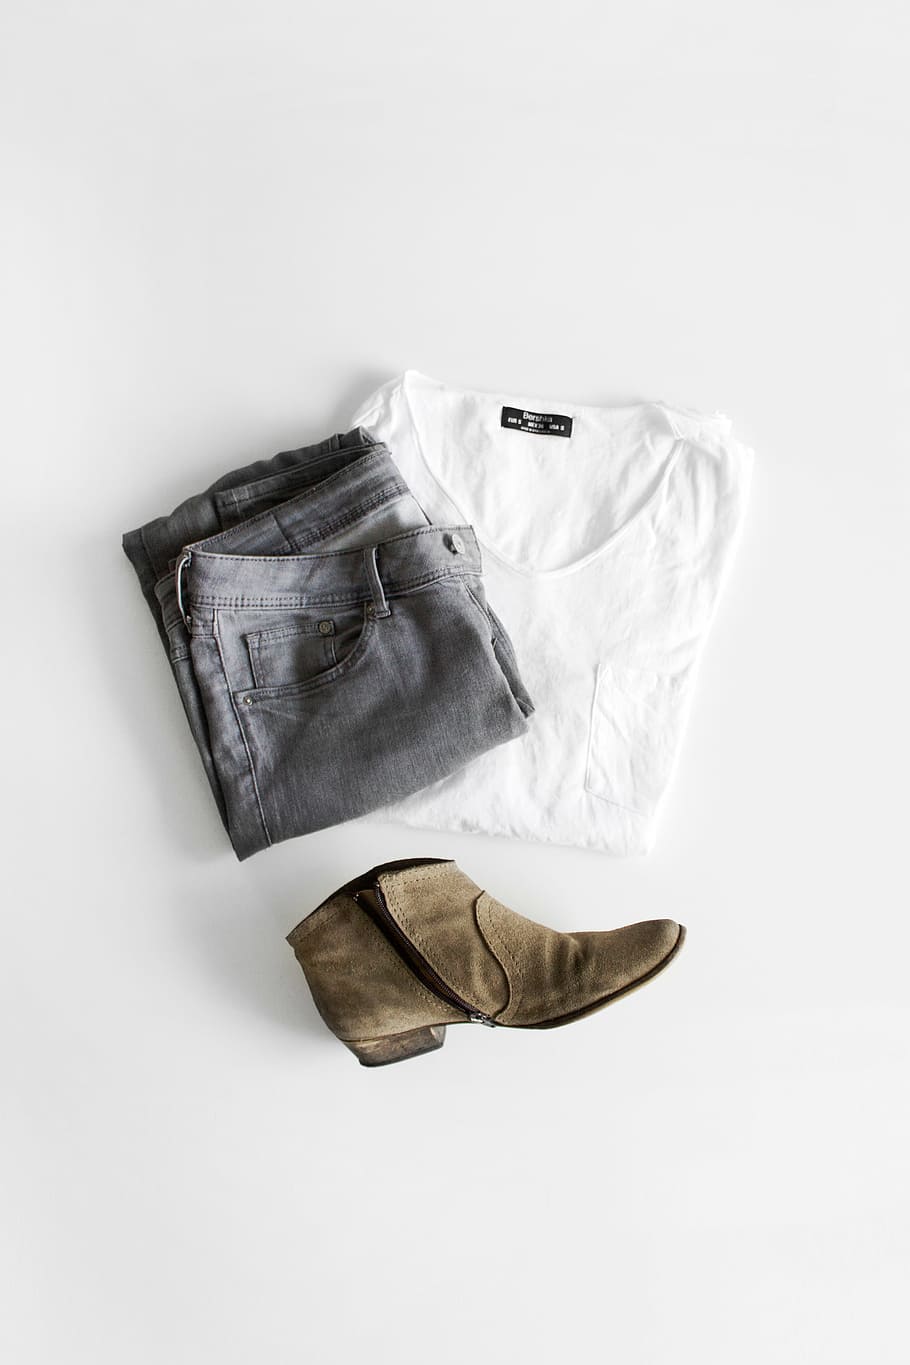 gris, pantalones de mezclilla, blanco, camisa con cuello redondo, sin emparejar, marrón, bota, jeans, todavía, artículos